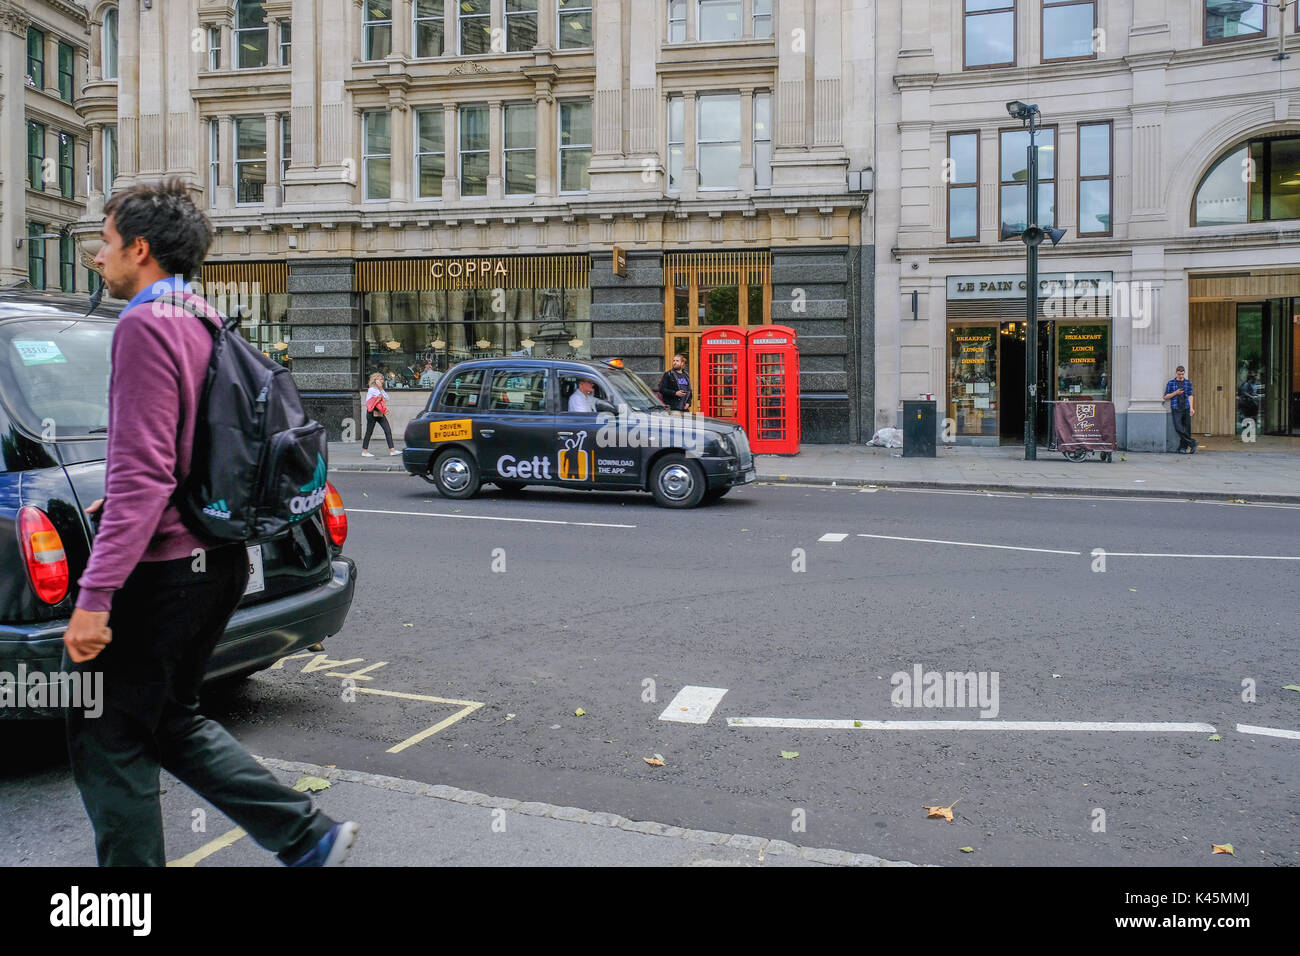 London, UK - August 3, 2017: street scene in der Stadt mit London Taxi und kultigen roten Telefonzellen. Stockfoto